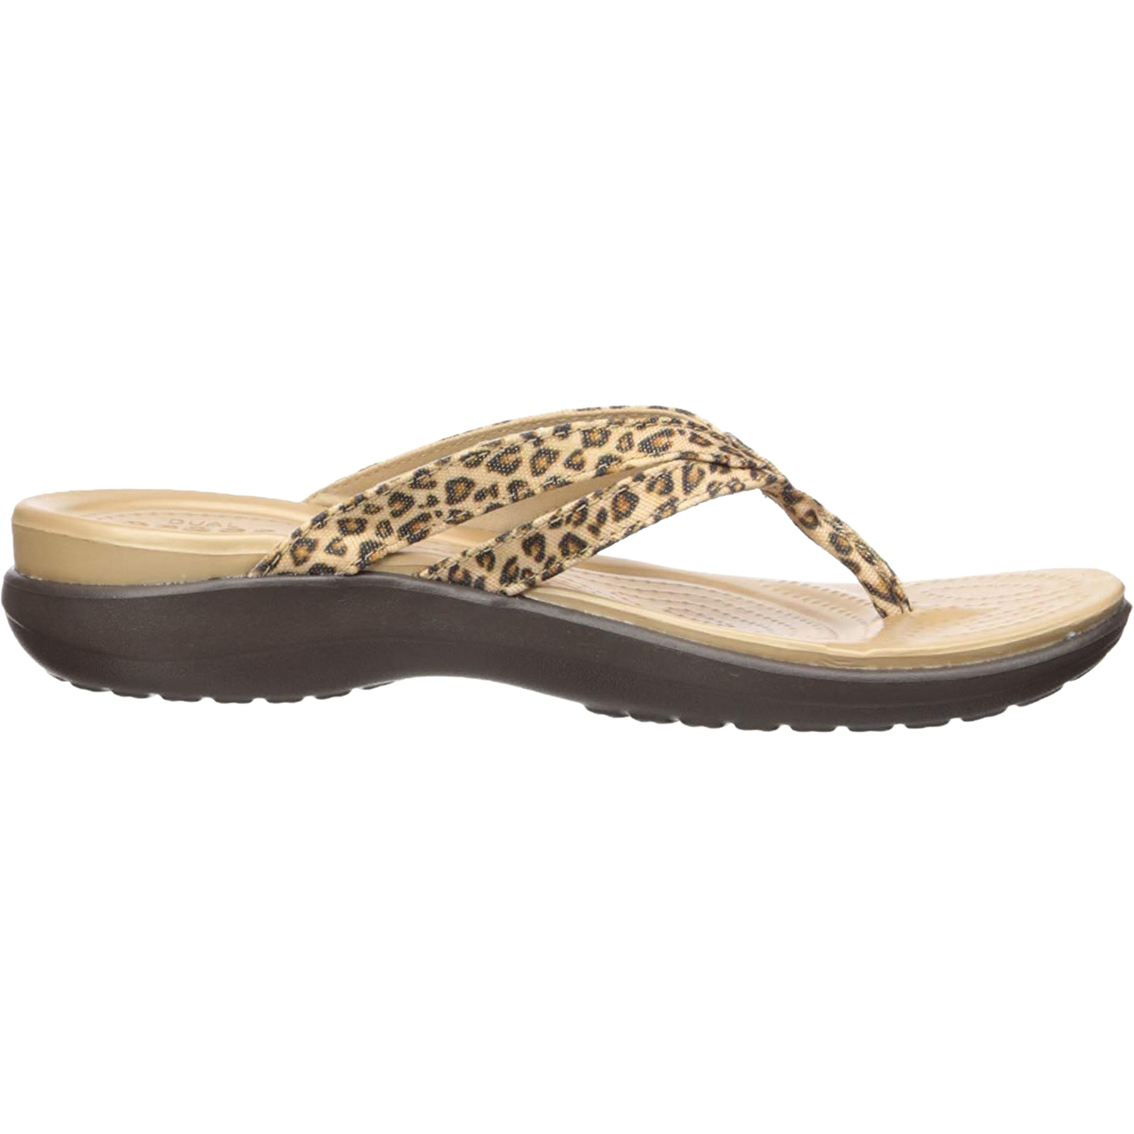 leopard print crocs flip flops